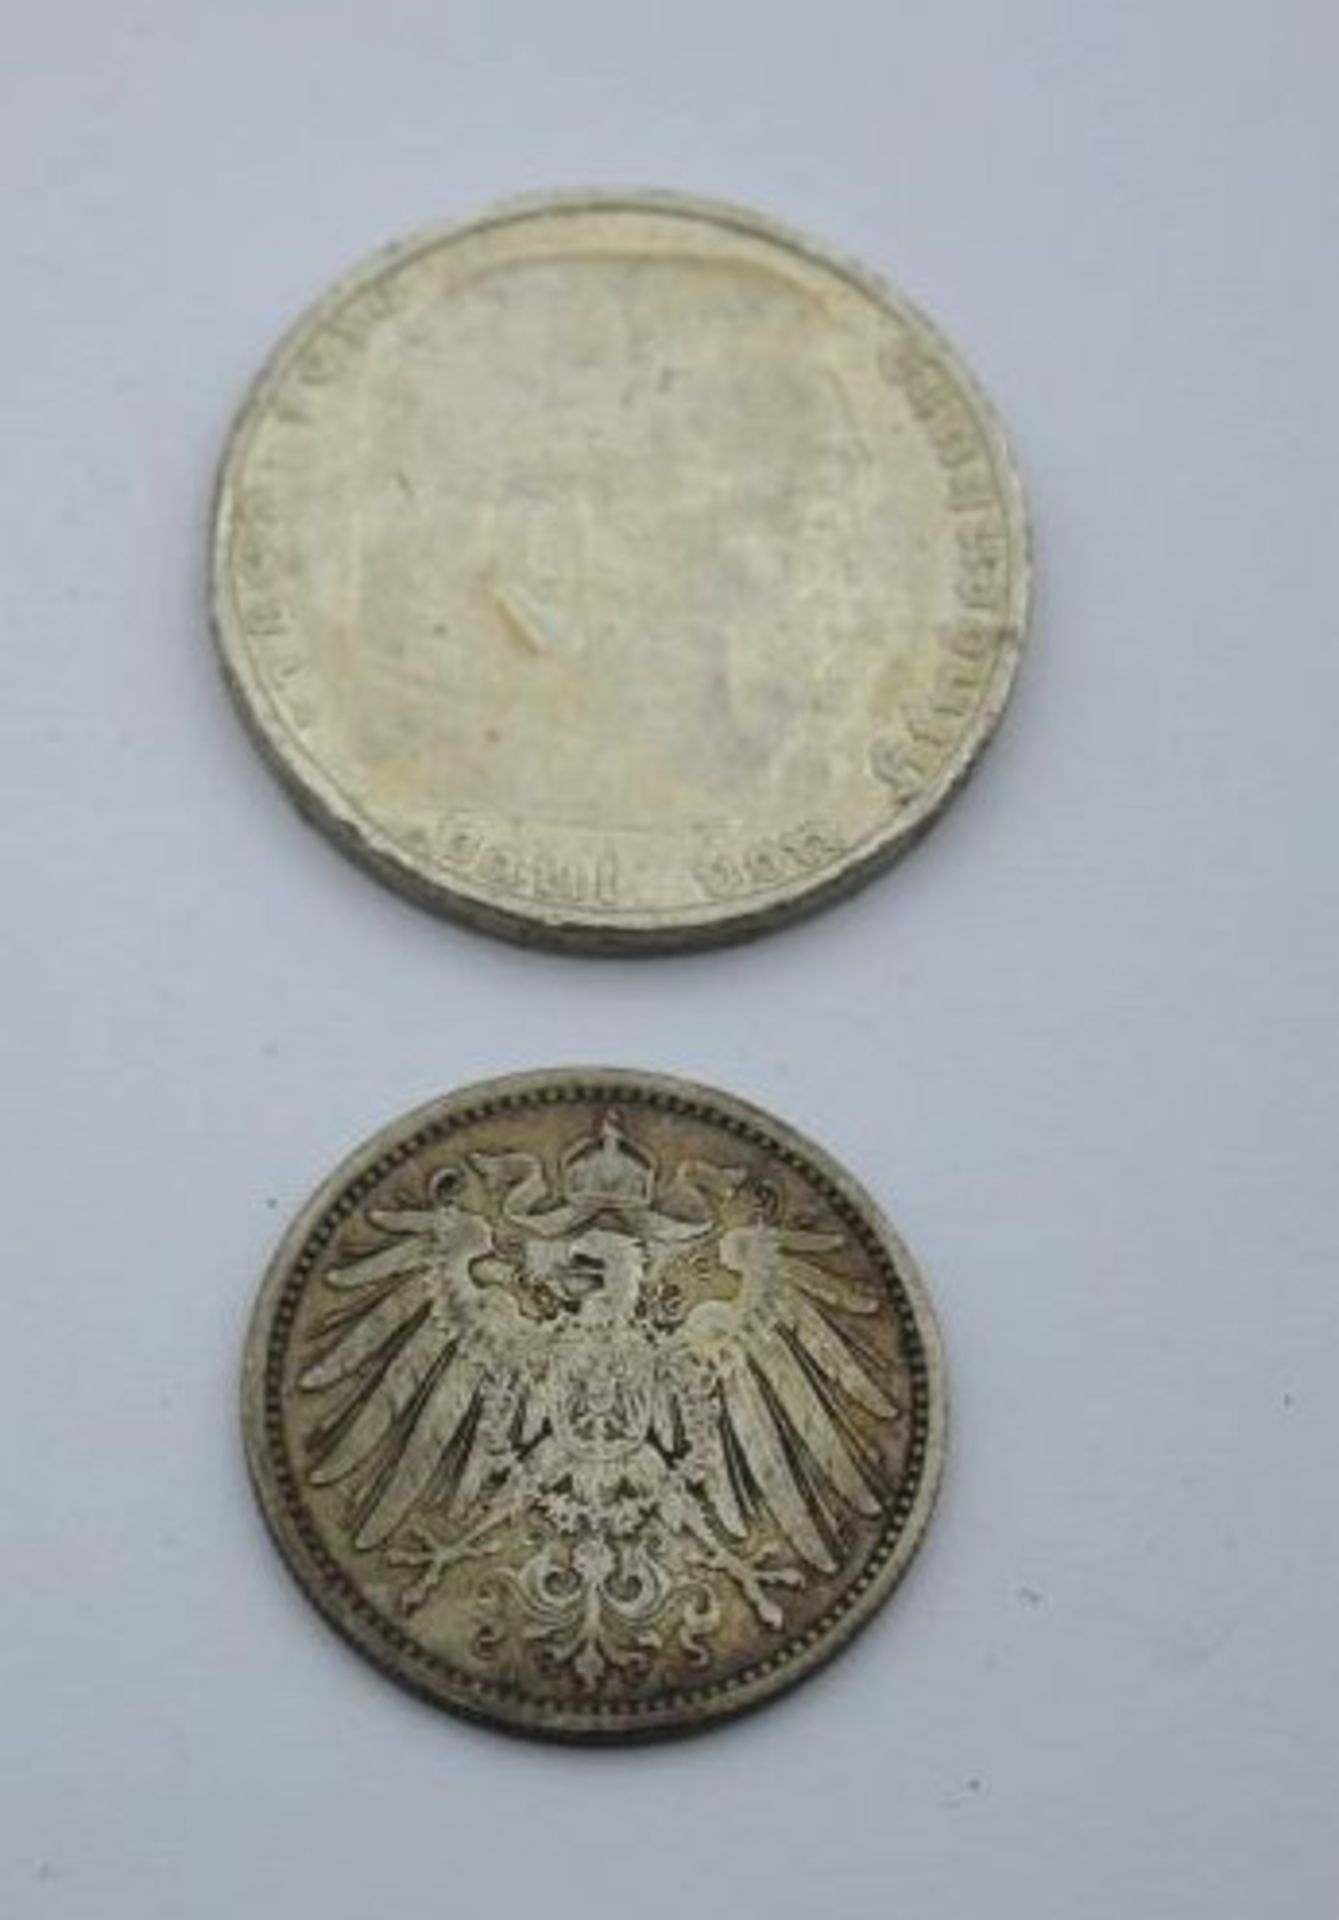 5 Mark Deutsches Reich 1935 Hindenburg sowie 1 Mark 1905.